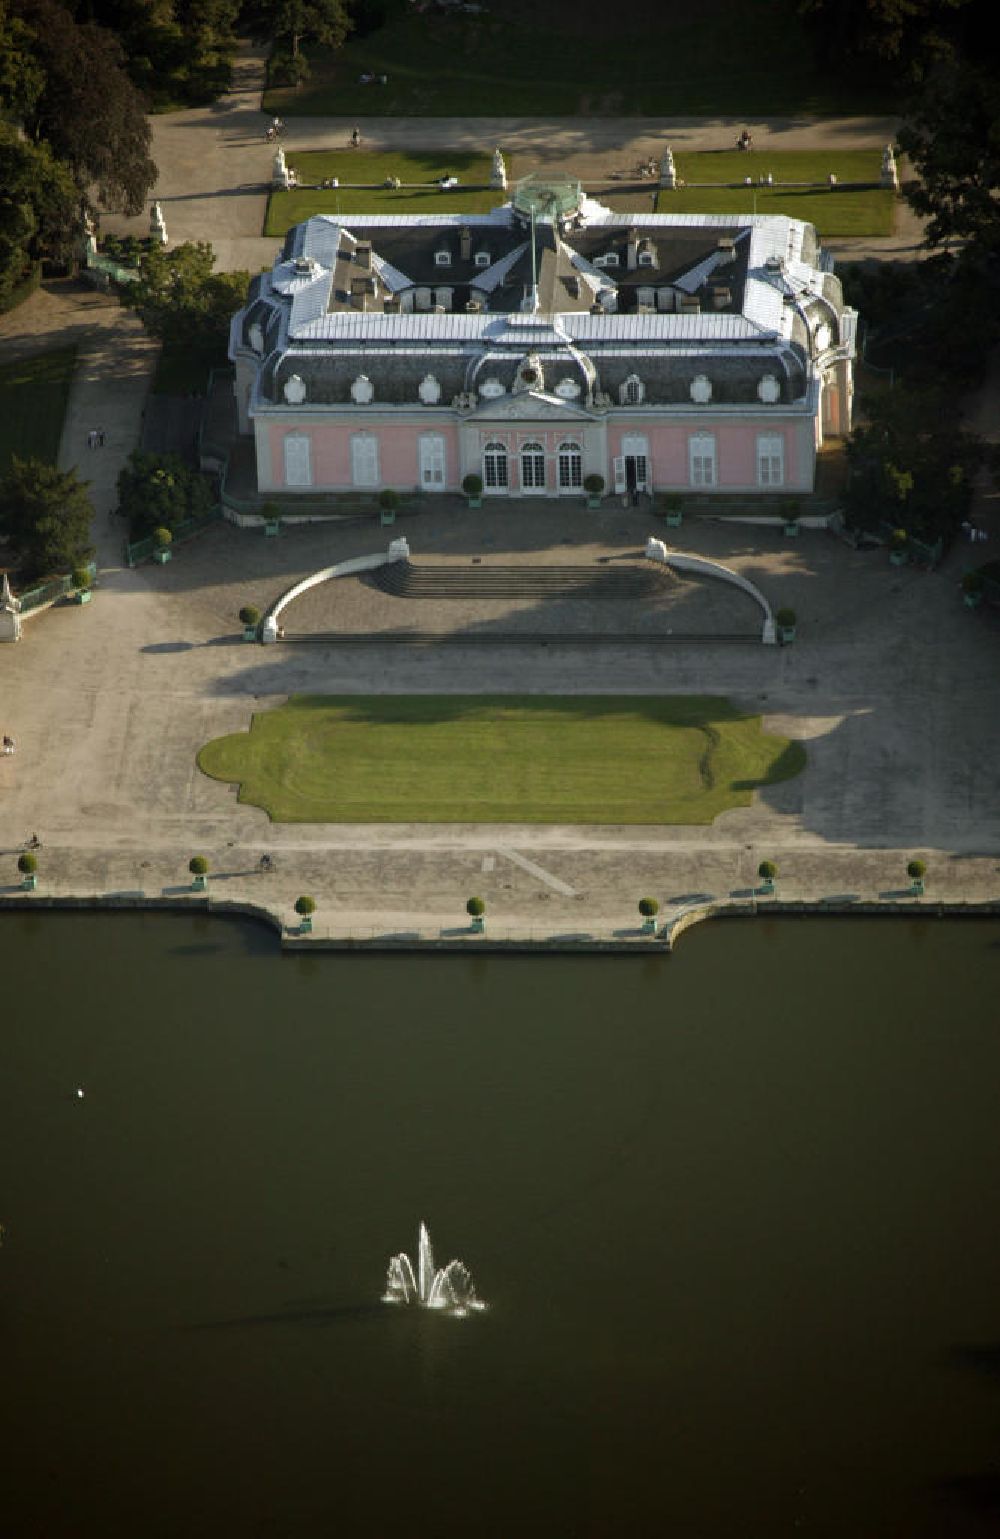 Aerial photograph Düsseldorf - Blick auf das Schloss Benrath in Düsseldorf.